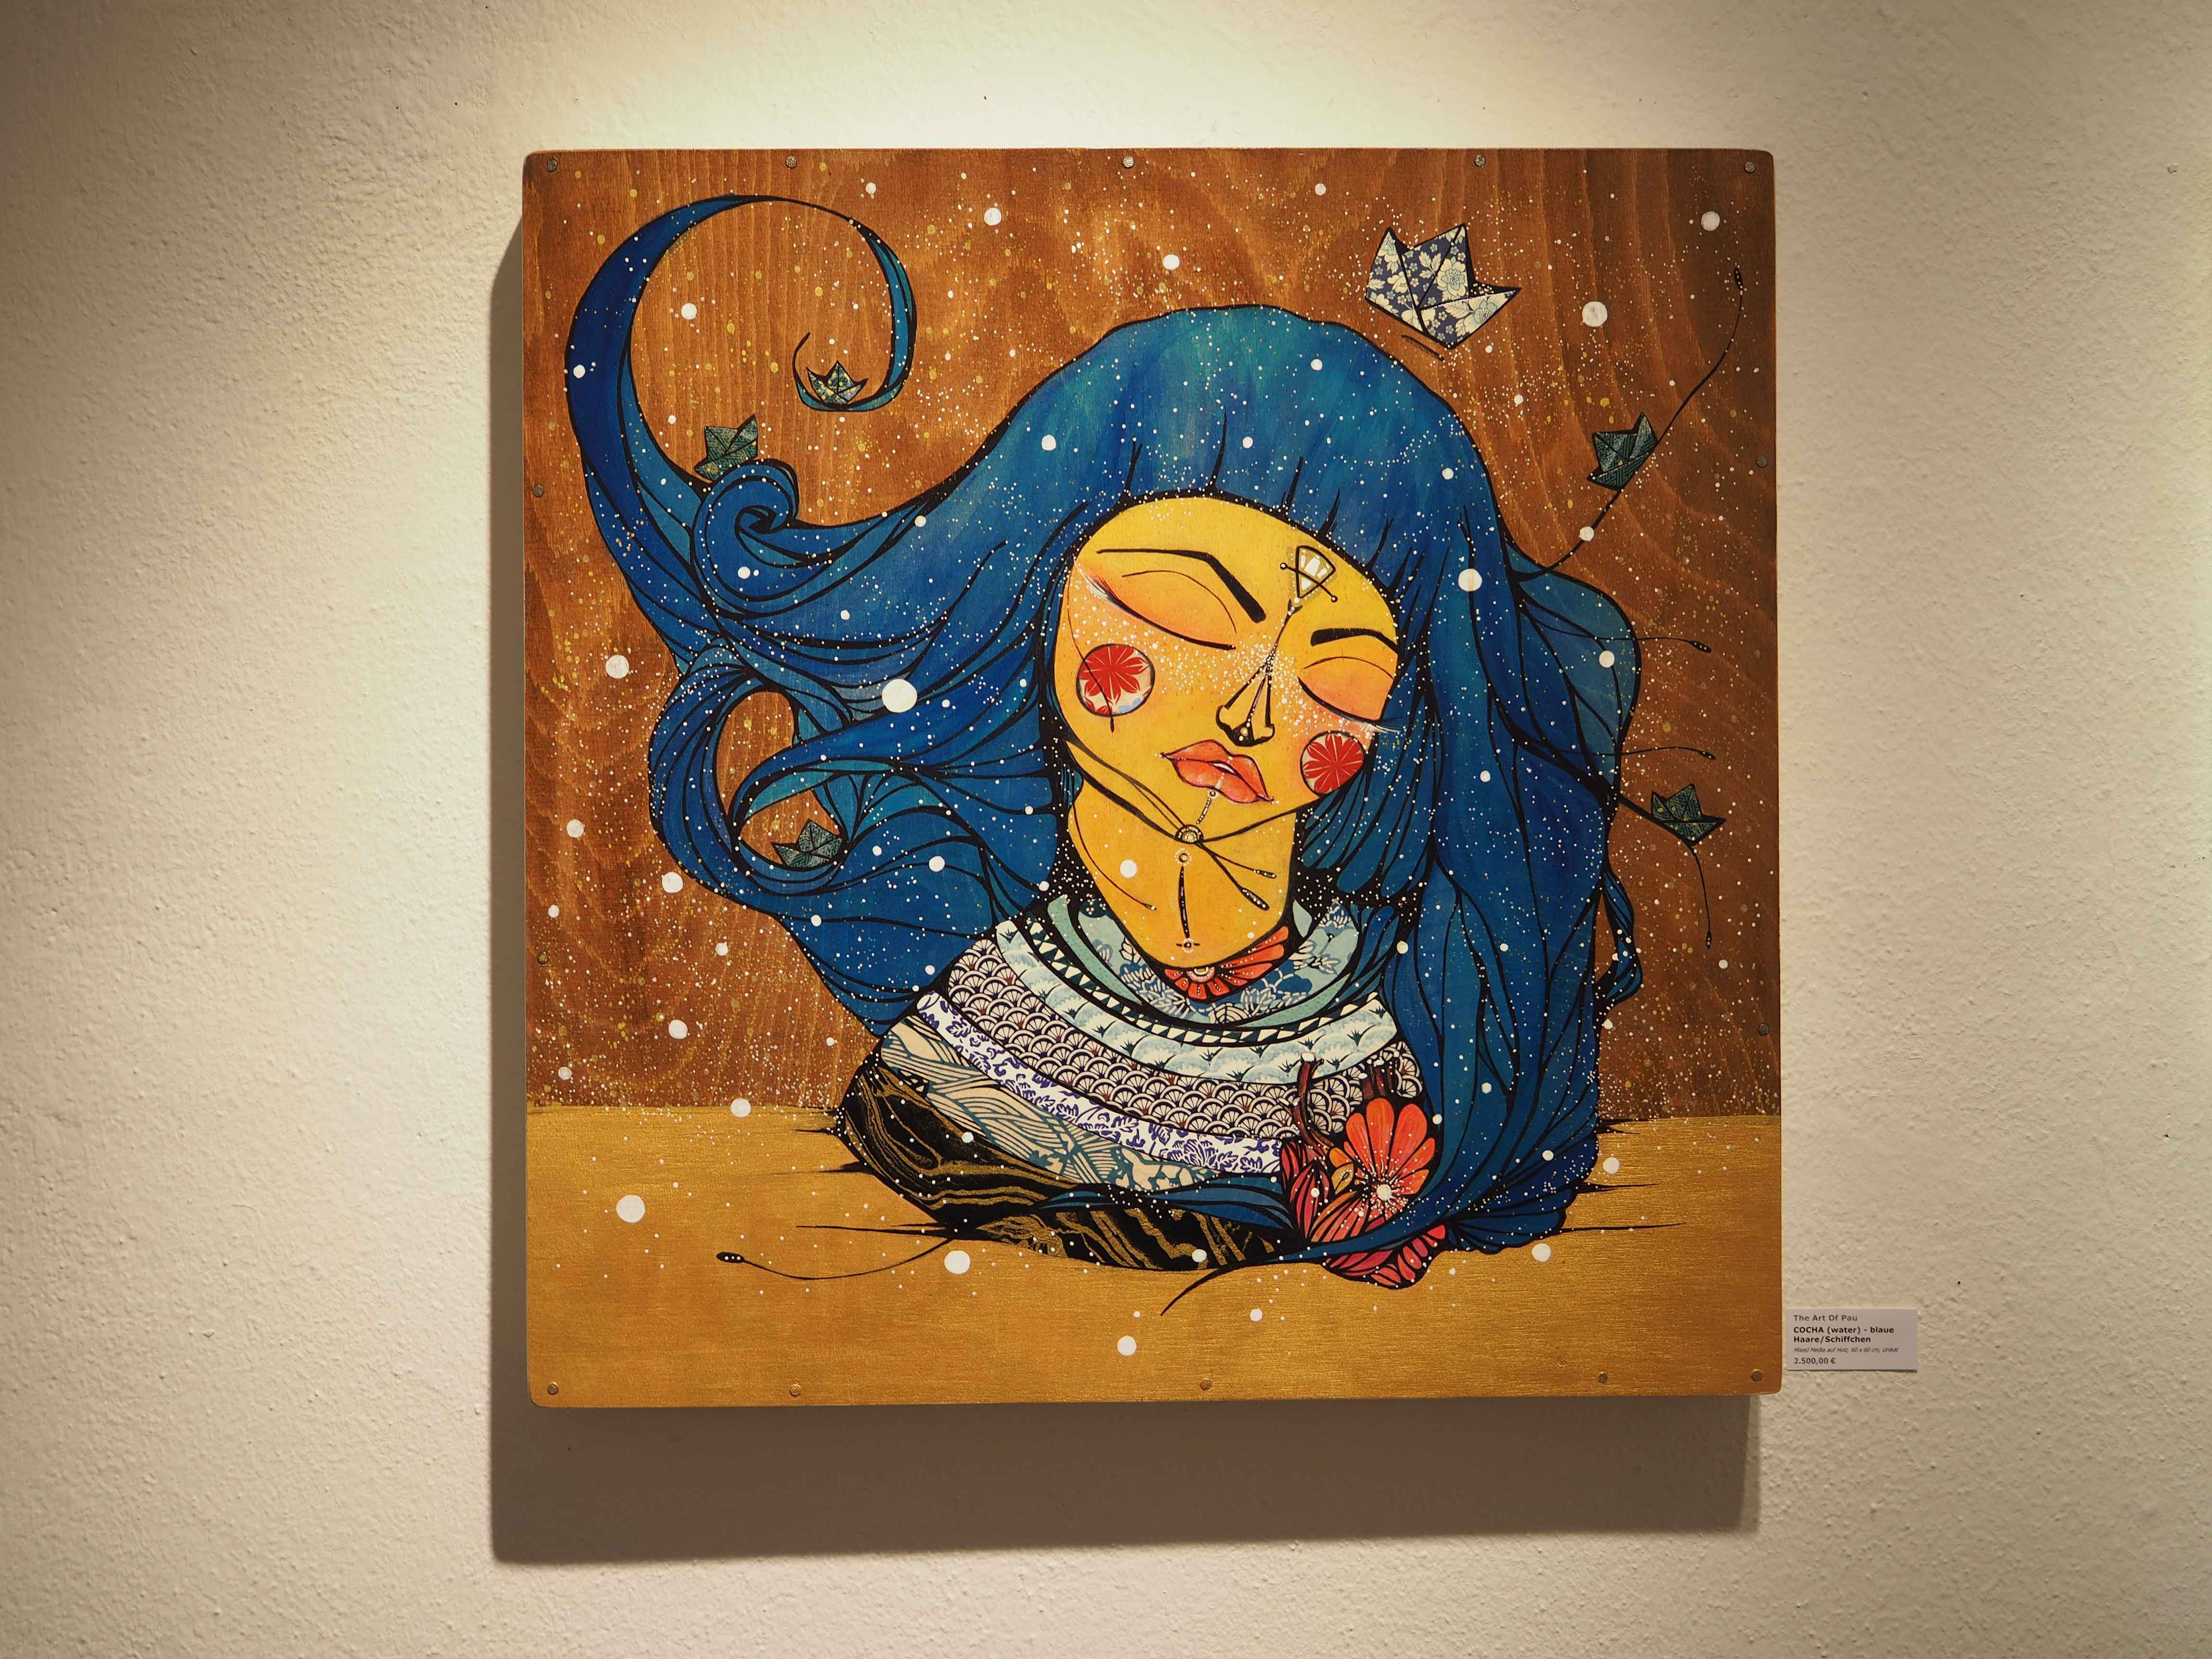 The Art of Pau zeigt eine Frau mit blauen Haaren auf einem Holzhintergrund